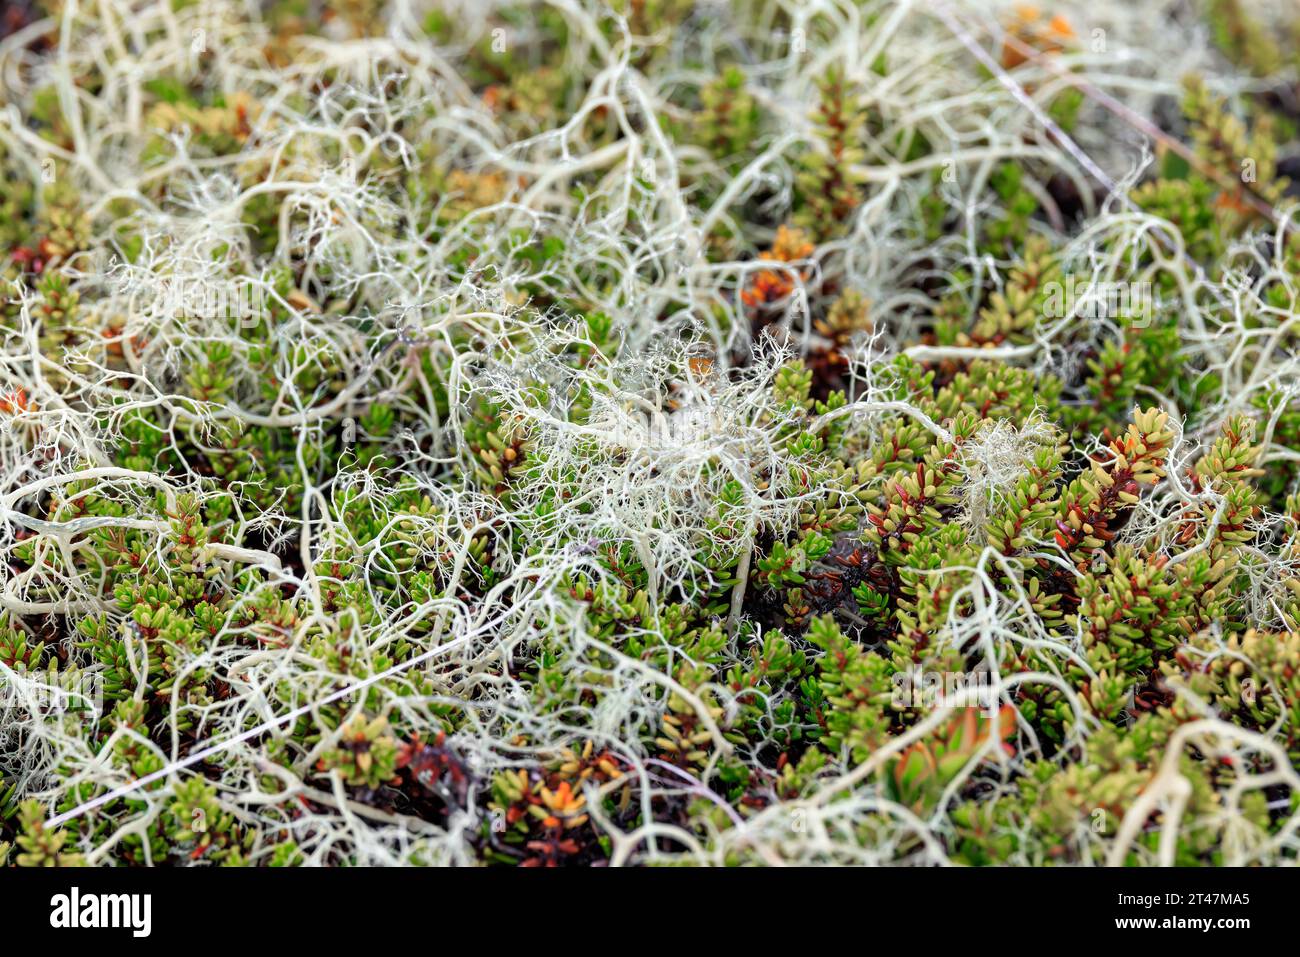 Vue rapprochée de la mousse de lichen de la toundra arctique. Trouvé principalement dans les zones de toundra arctique, toundra alpine, il est extrêmement résistant au froid. Cladonia rangiferina, aussi k Banque D'Images